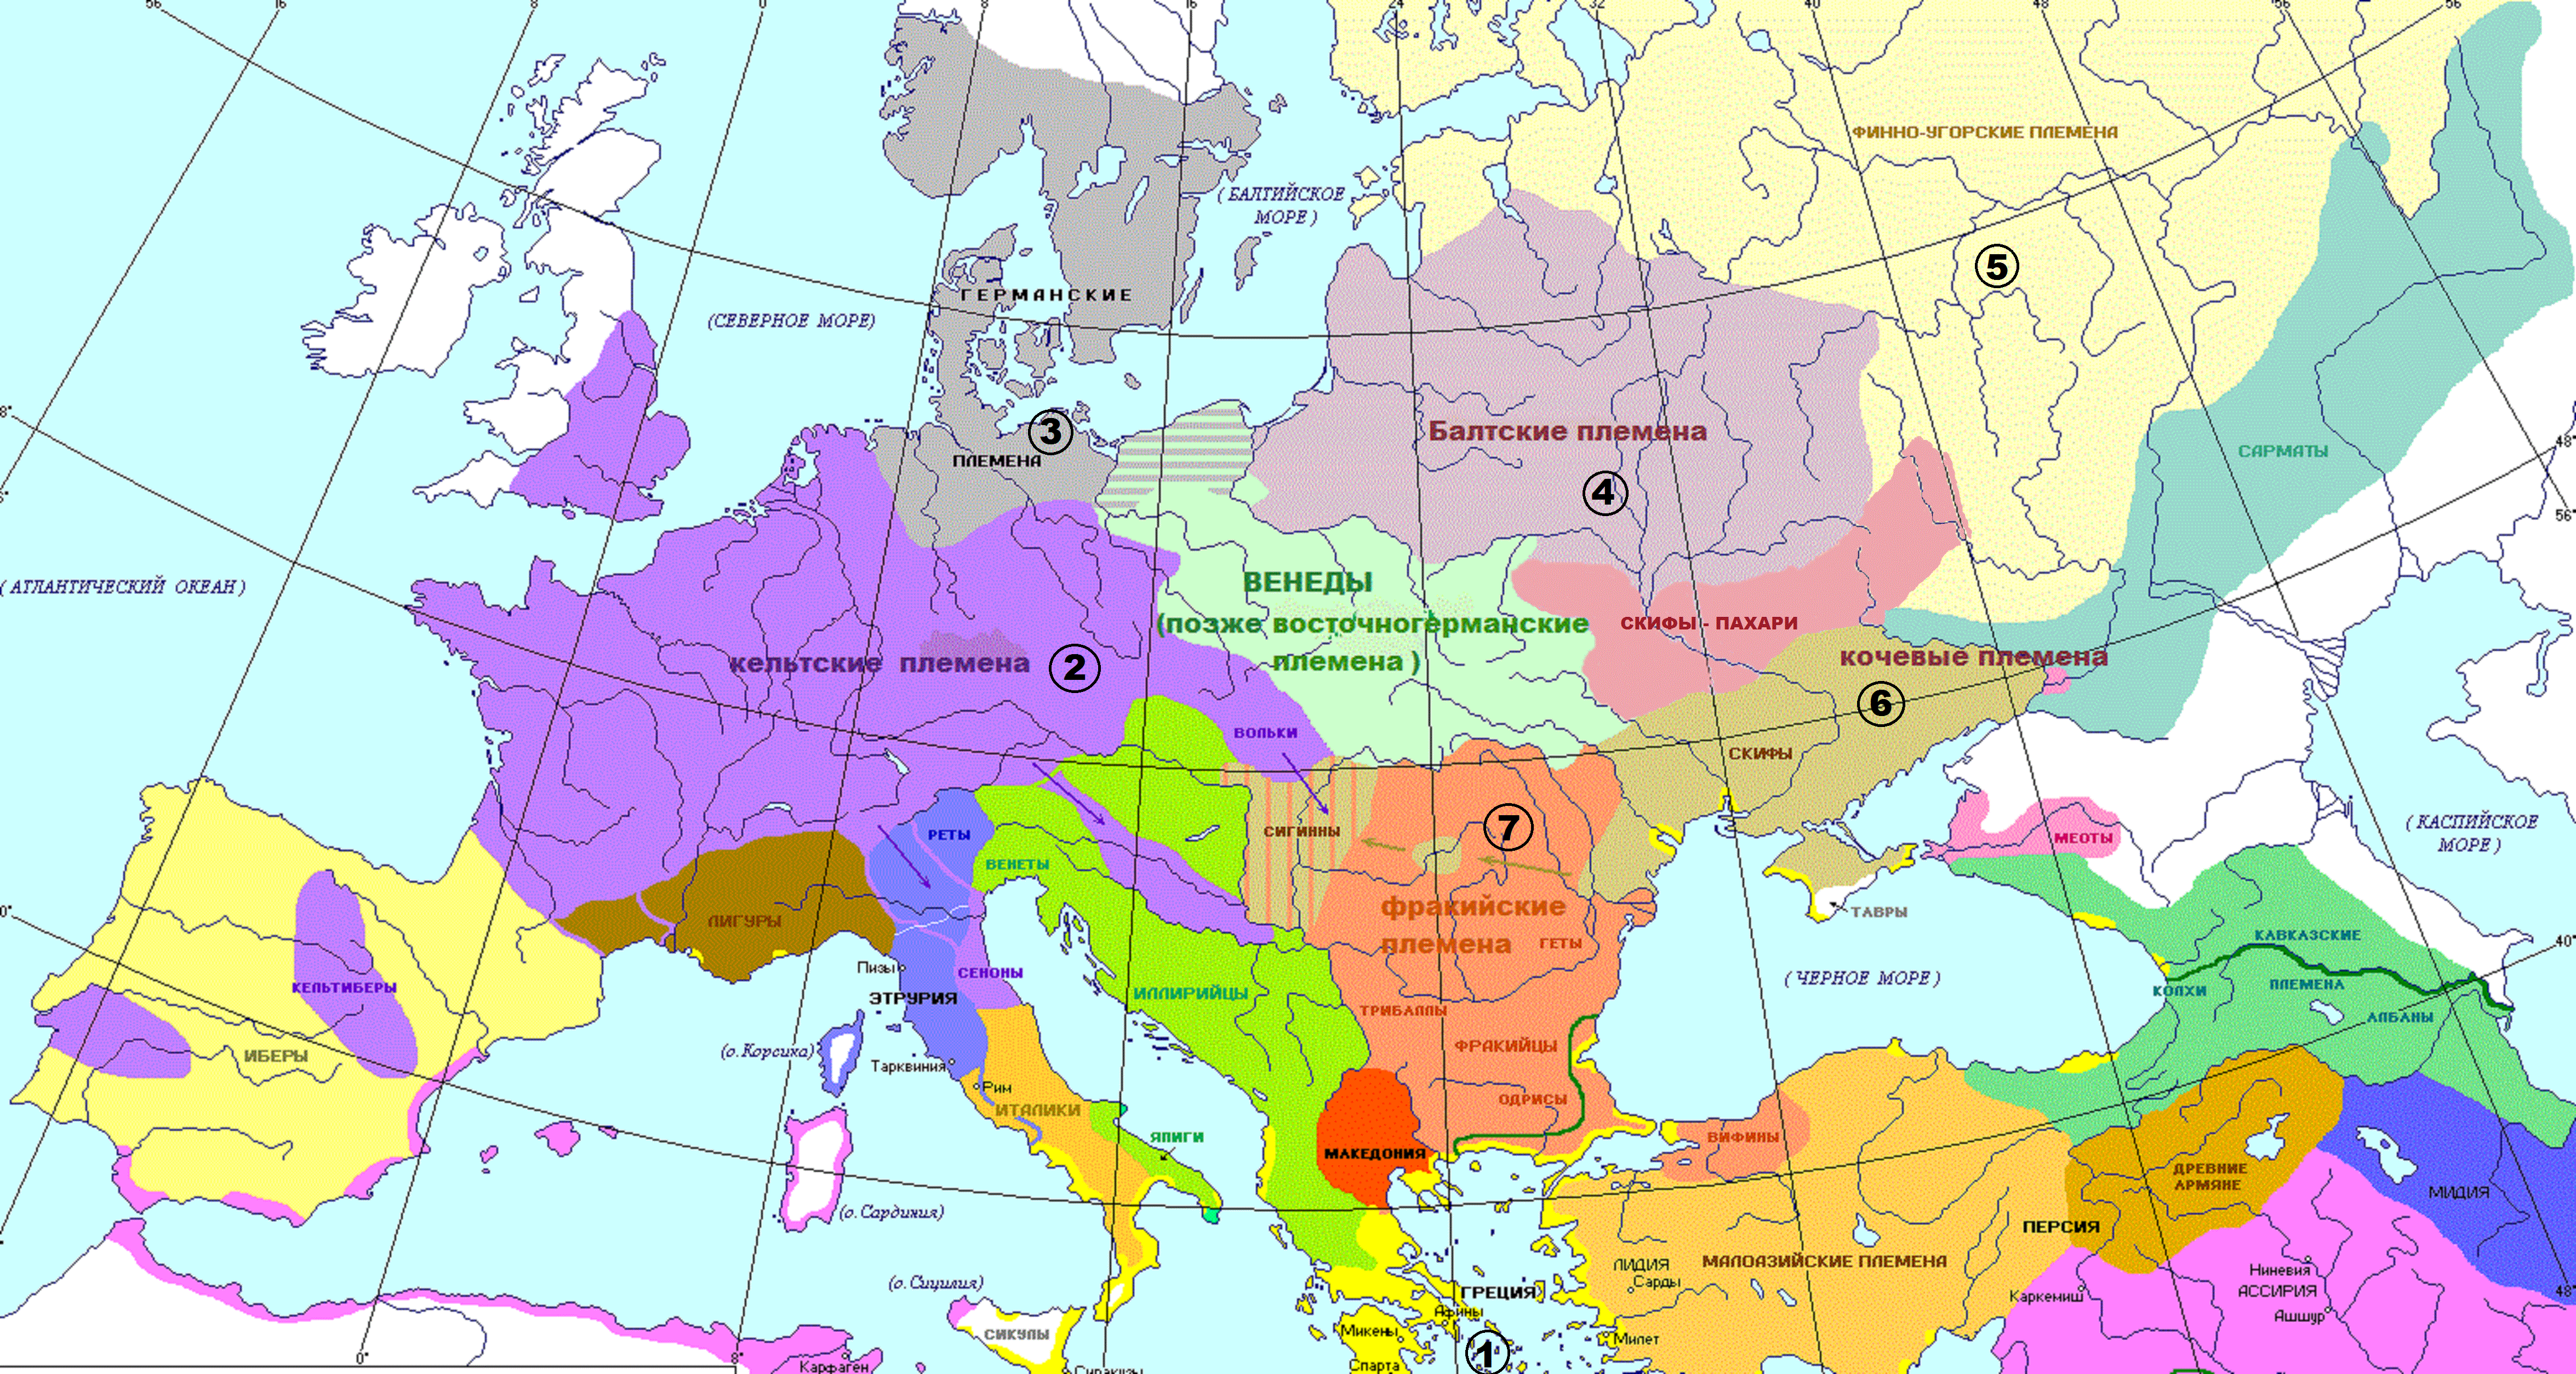 Семь миров Европы первого тысячеления до нашей эры по М. Щукину (на основе карты В. Николаева)